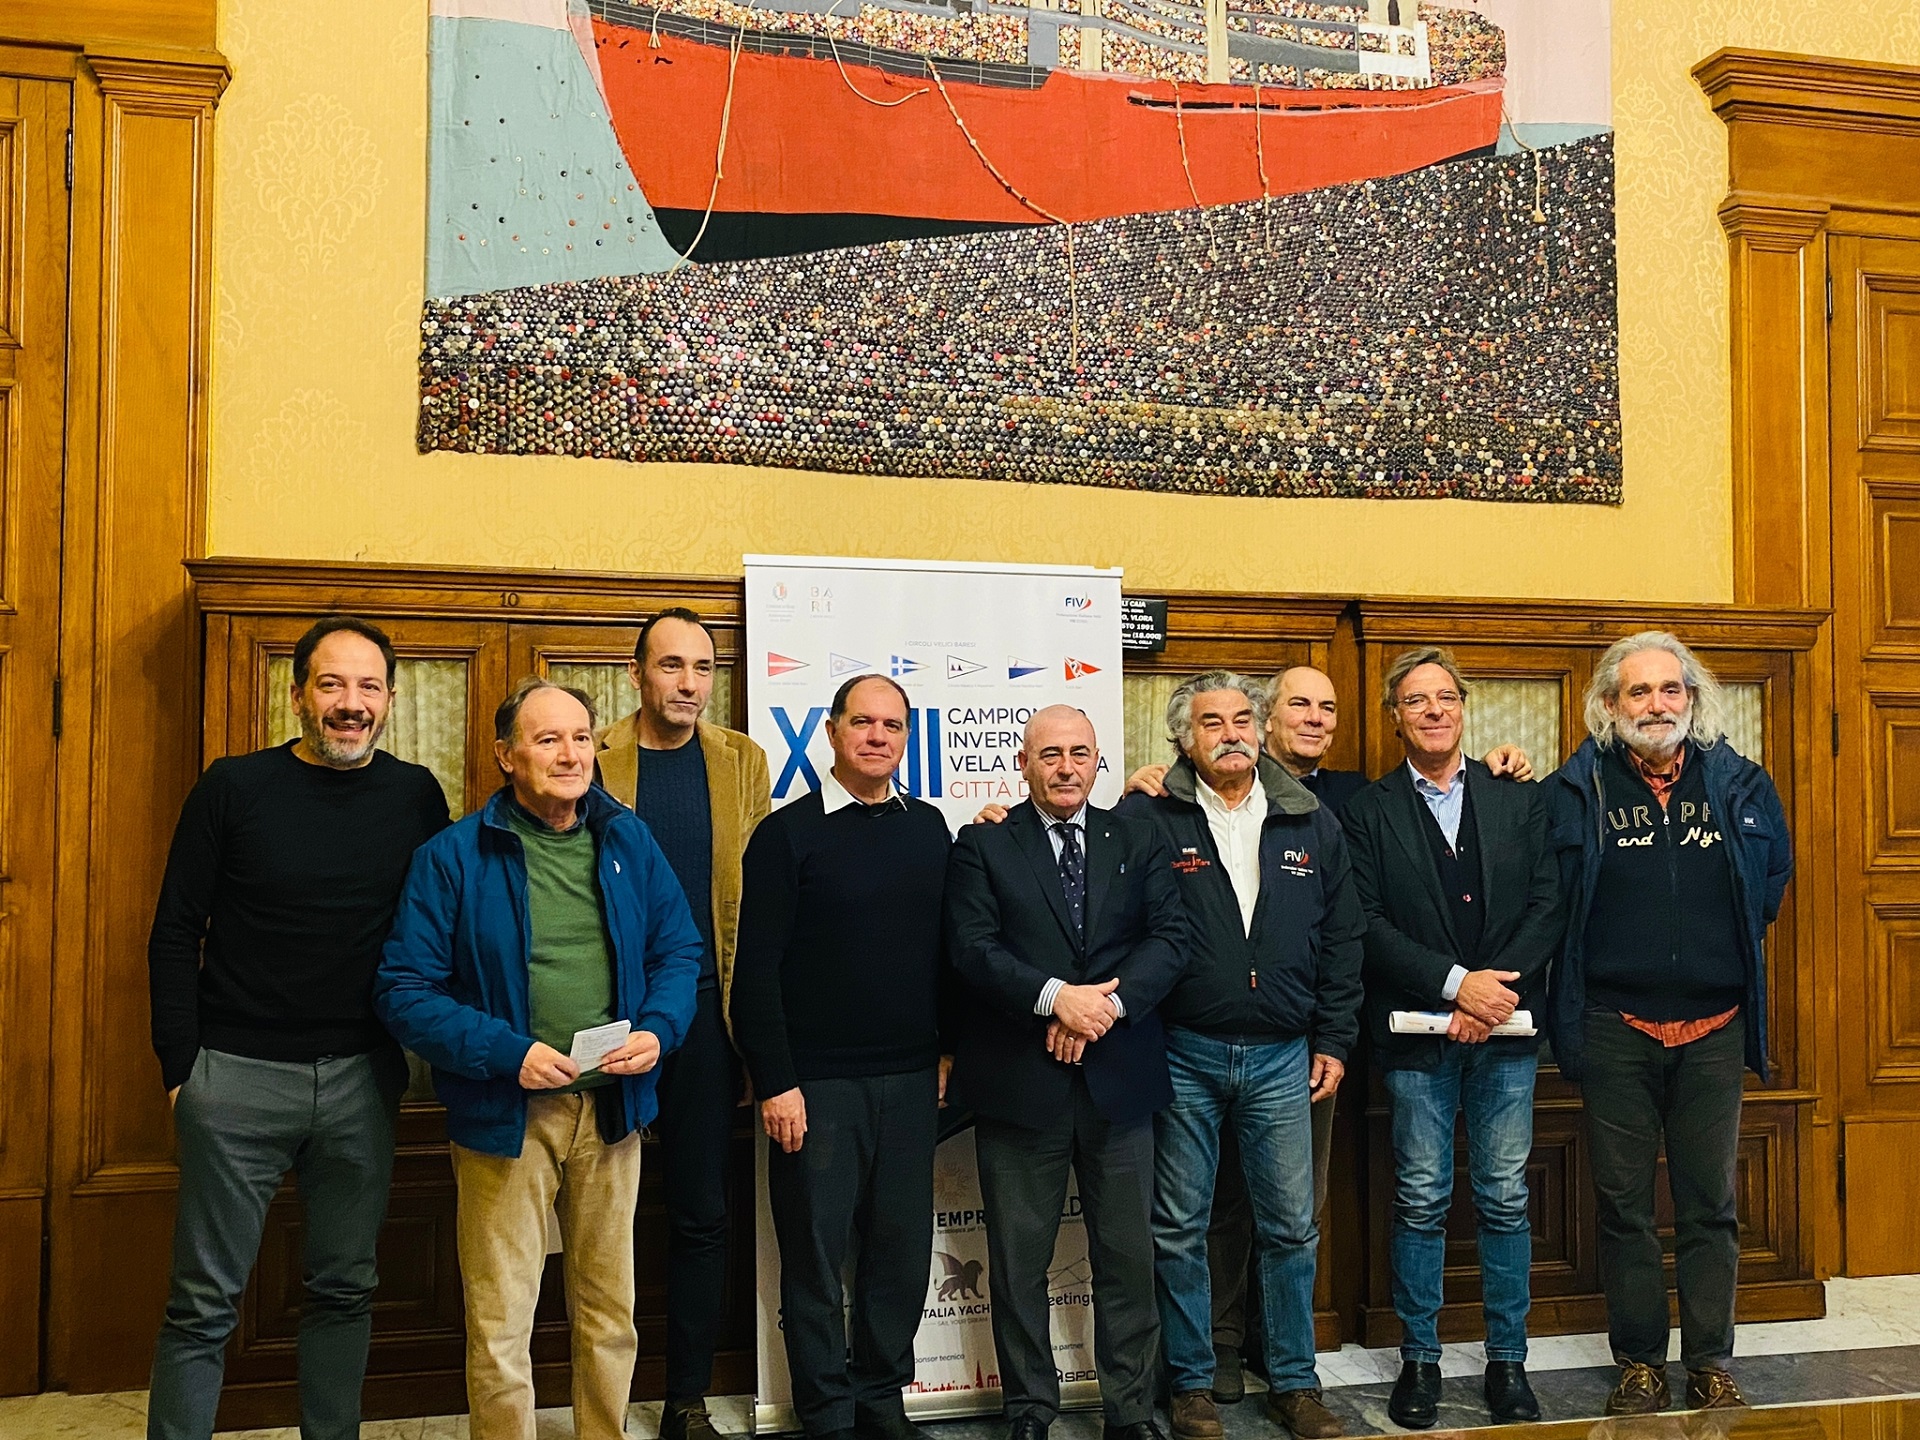 Al via alla XXIII edizione del Campionato Invernale Vela d’Altura Città di Bari con la conferenza stampa a Palazzo di Città